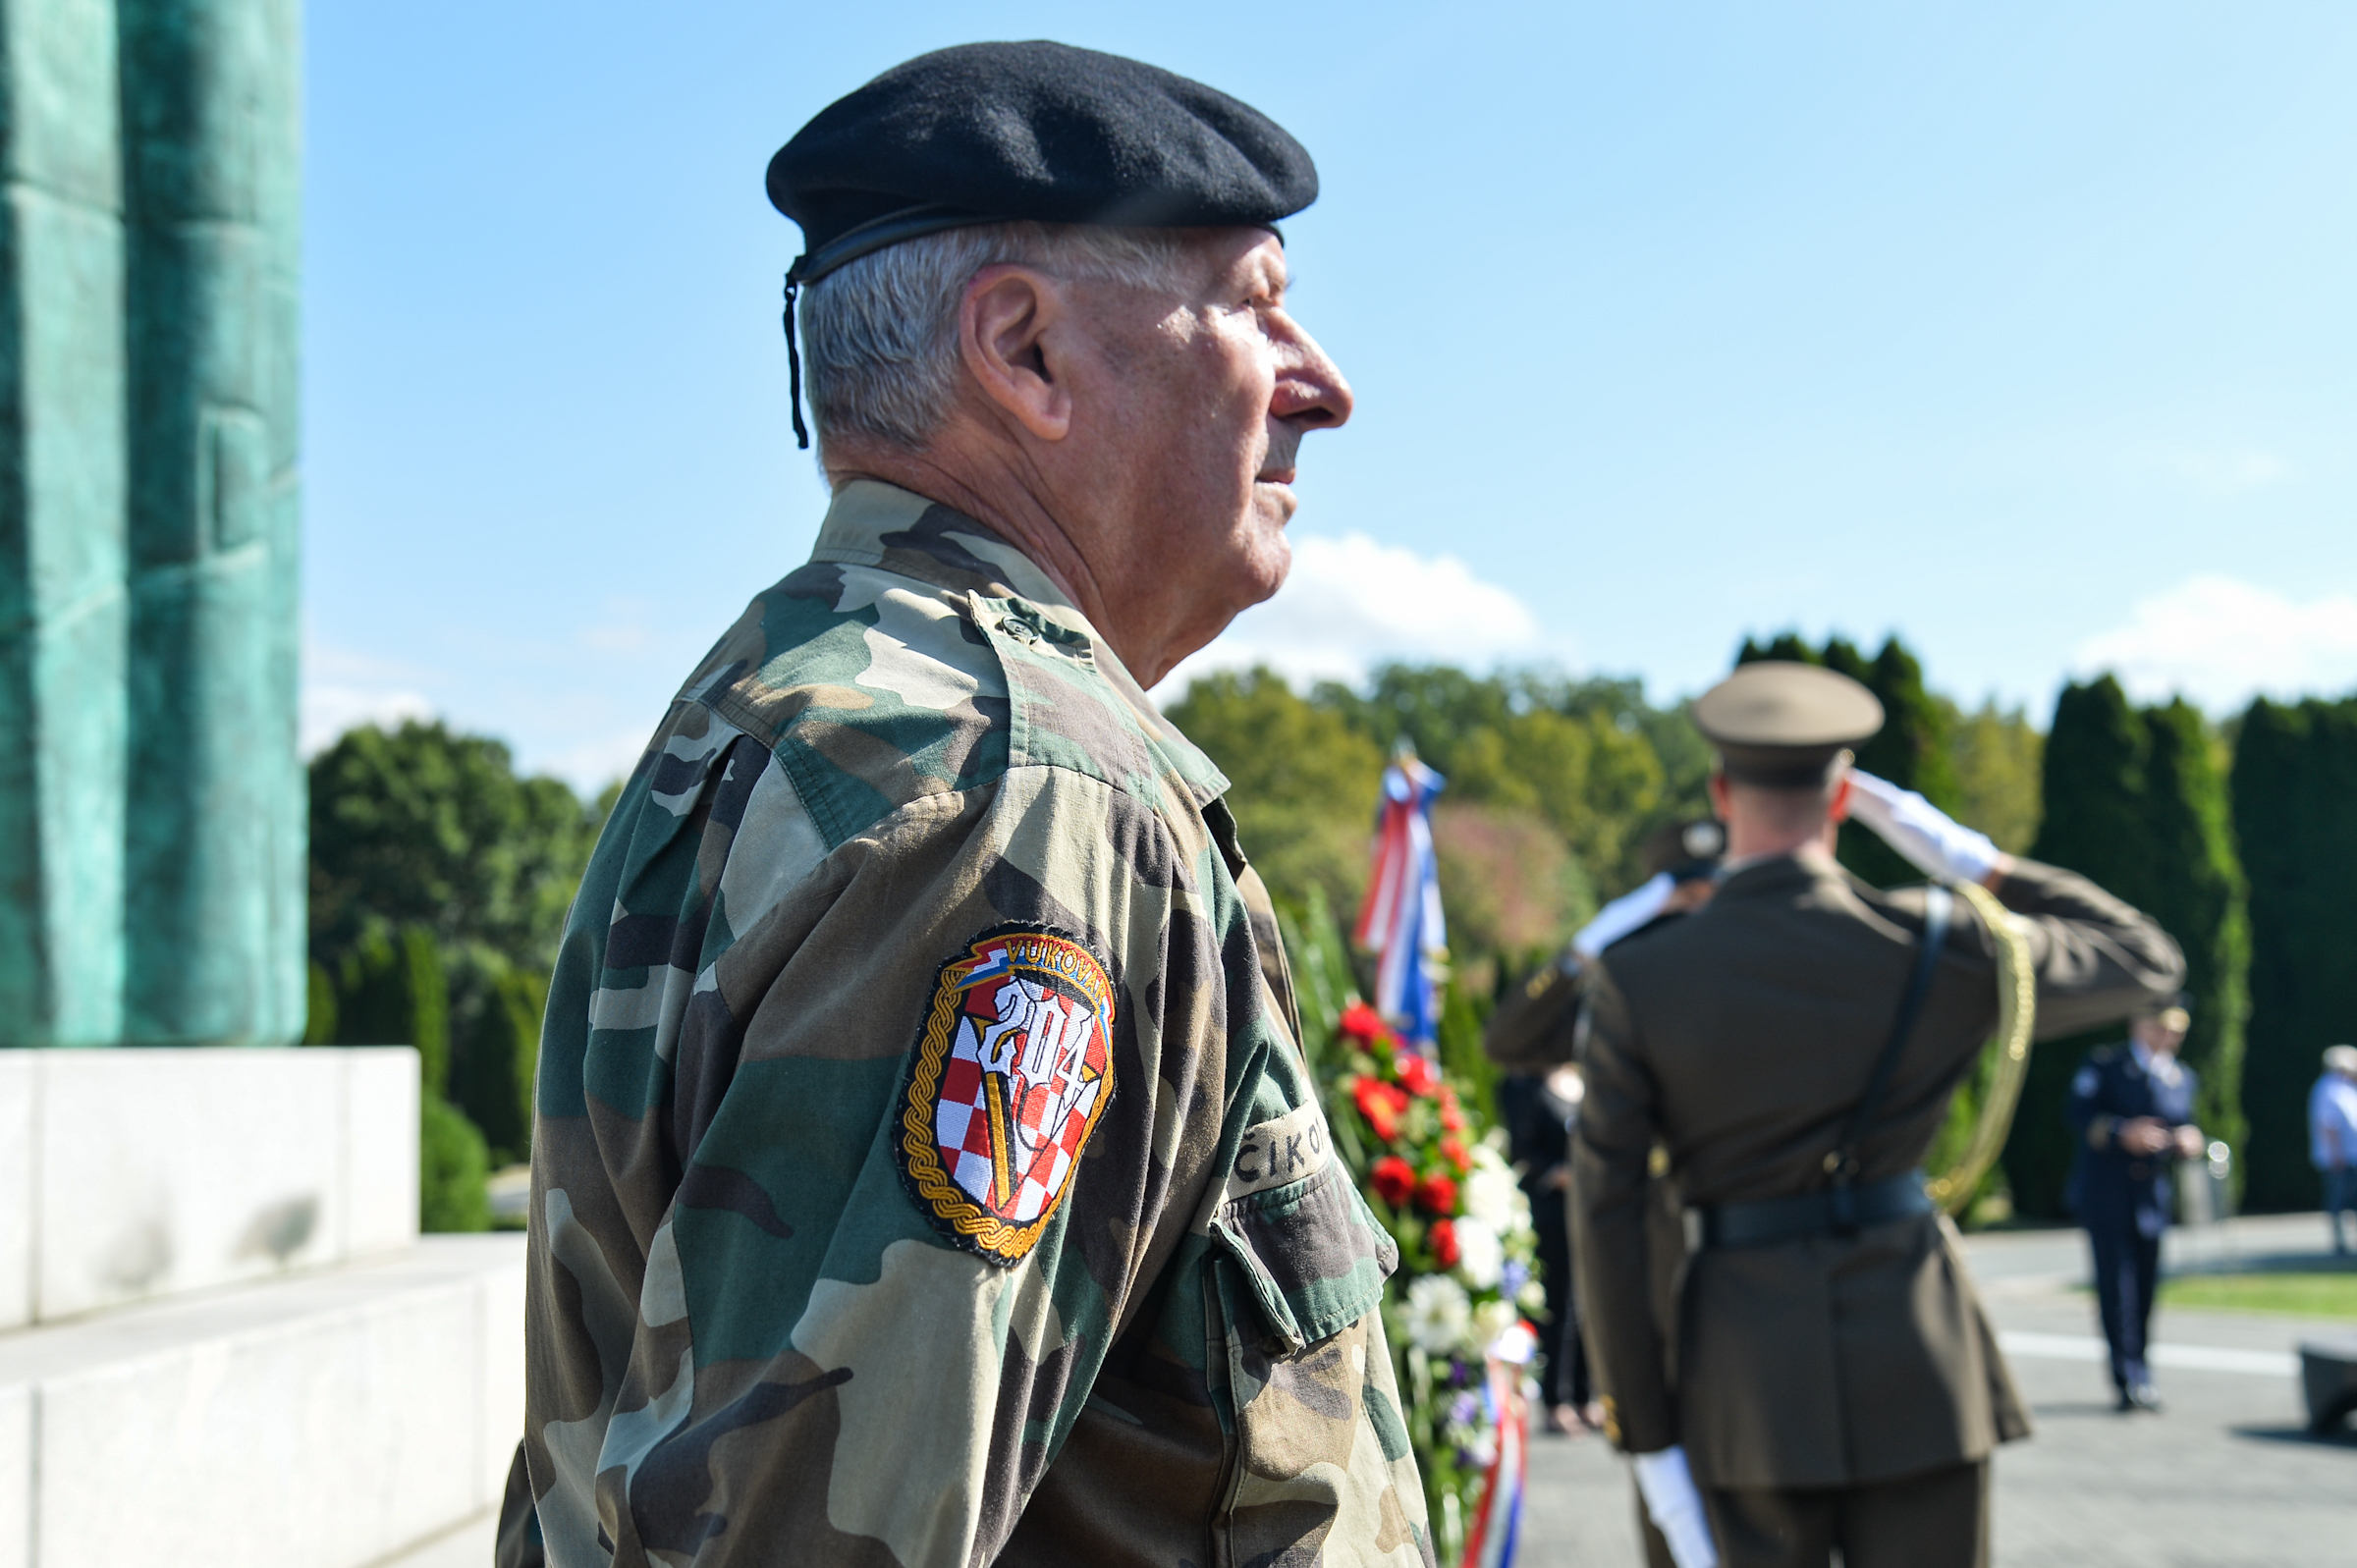 Hrvatska vojska odala počast Vukovaru i 204. vukovarskoj brigadi